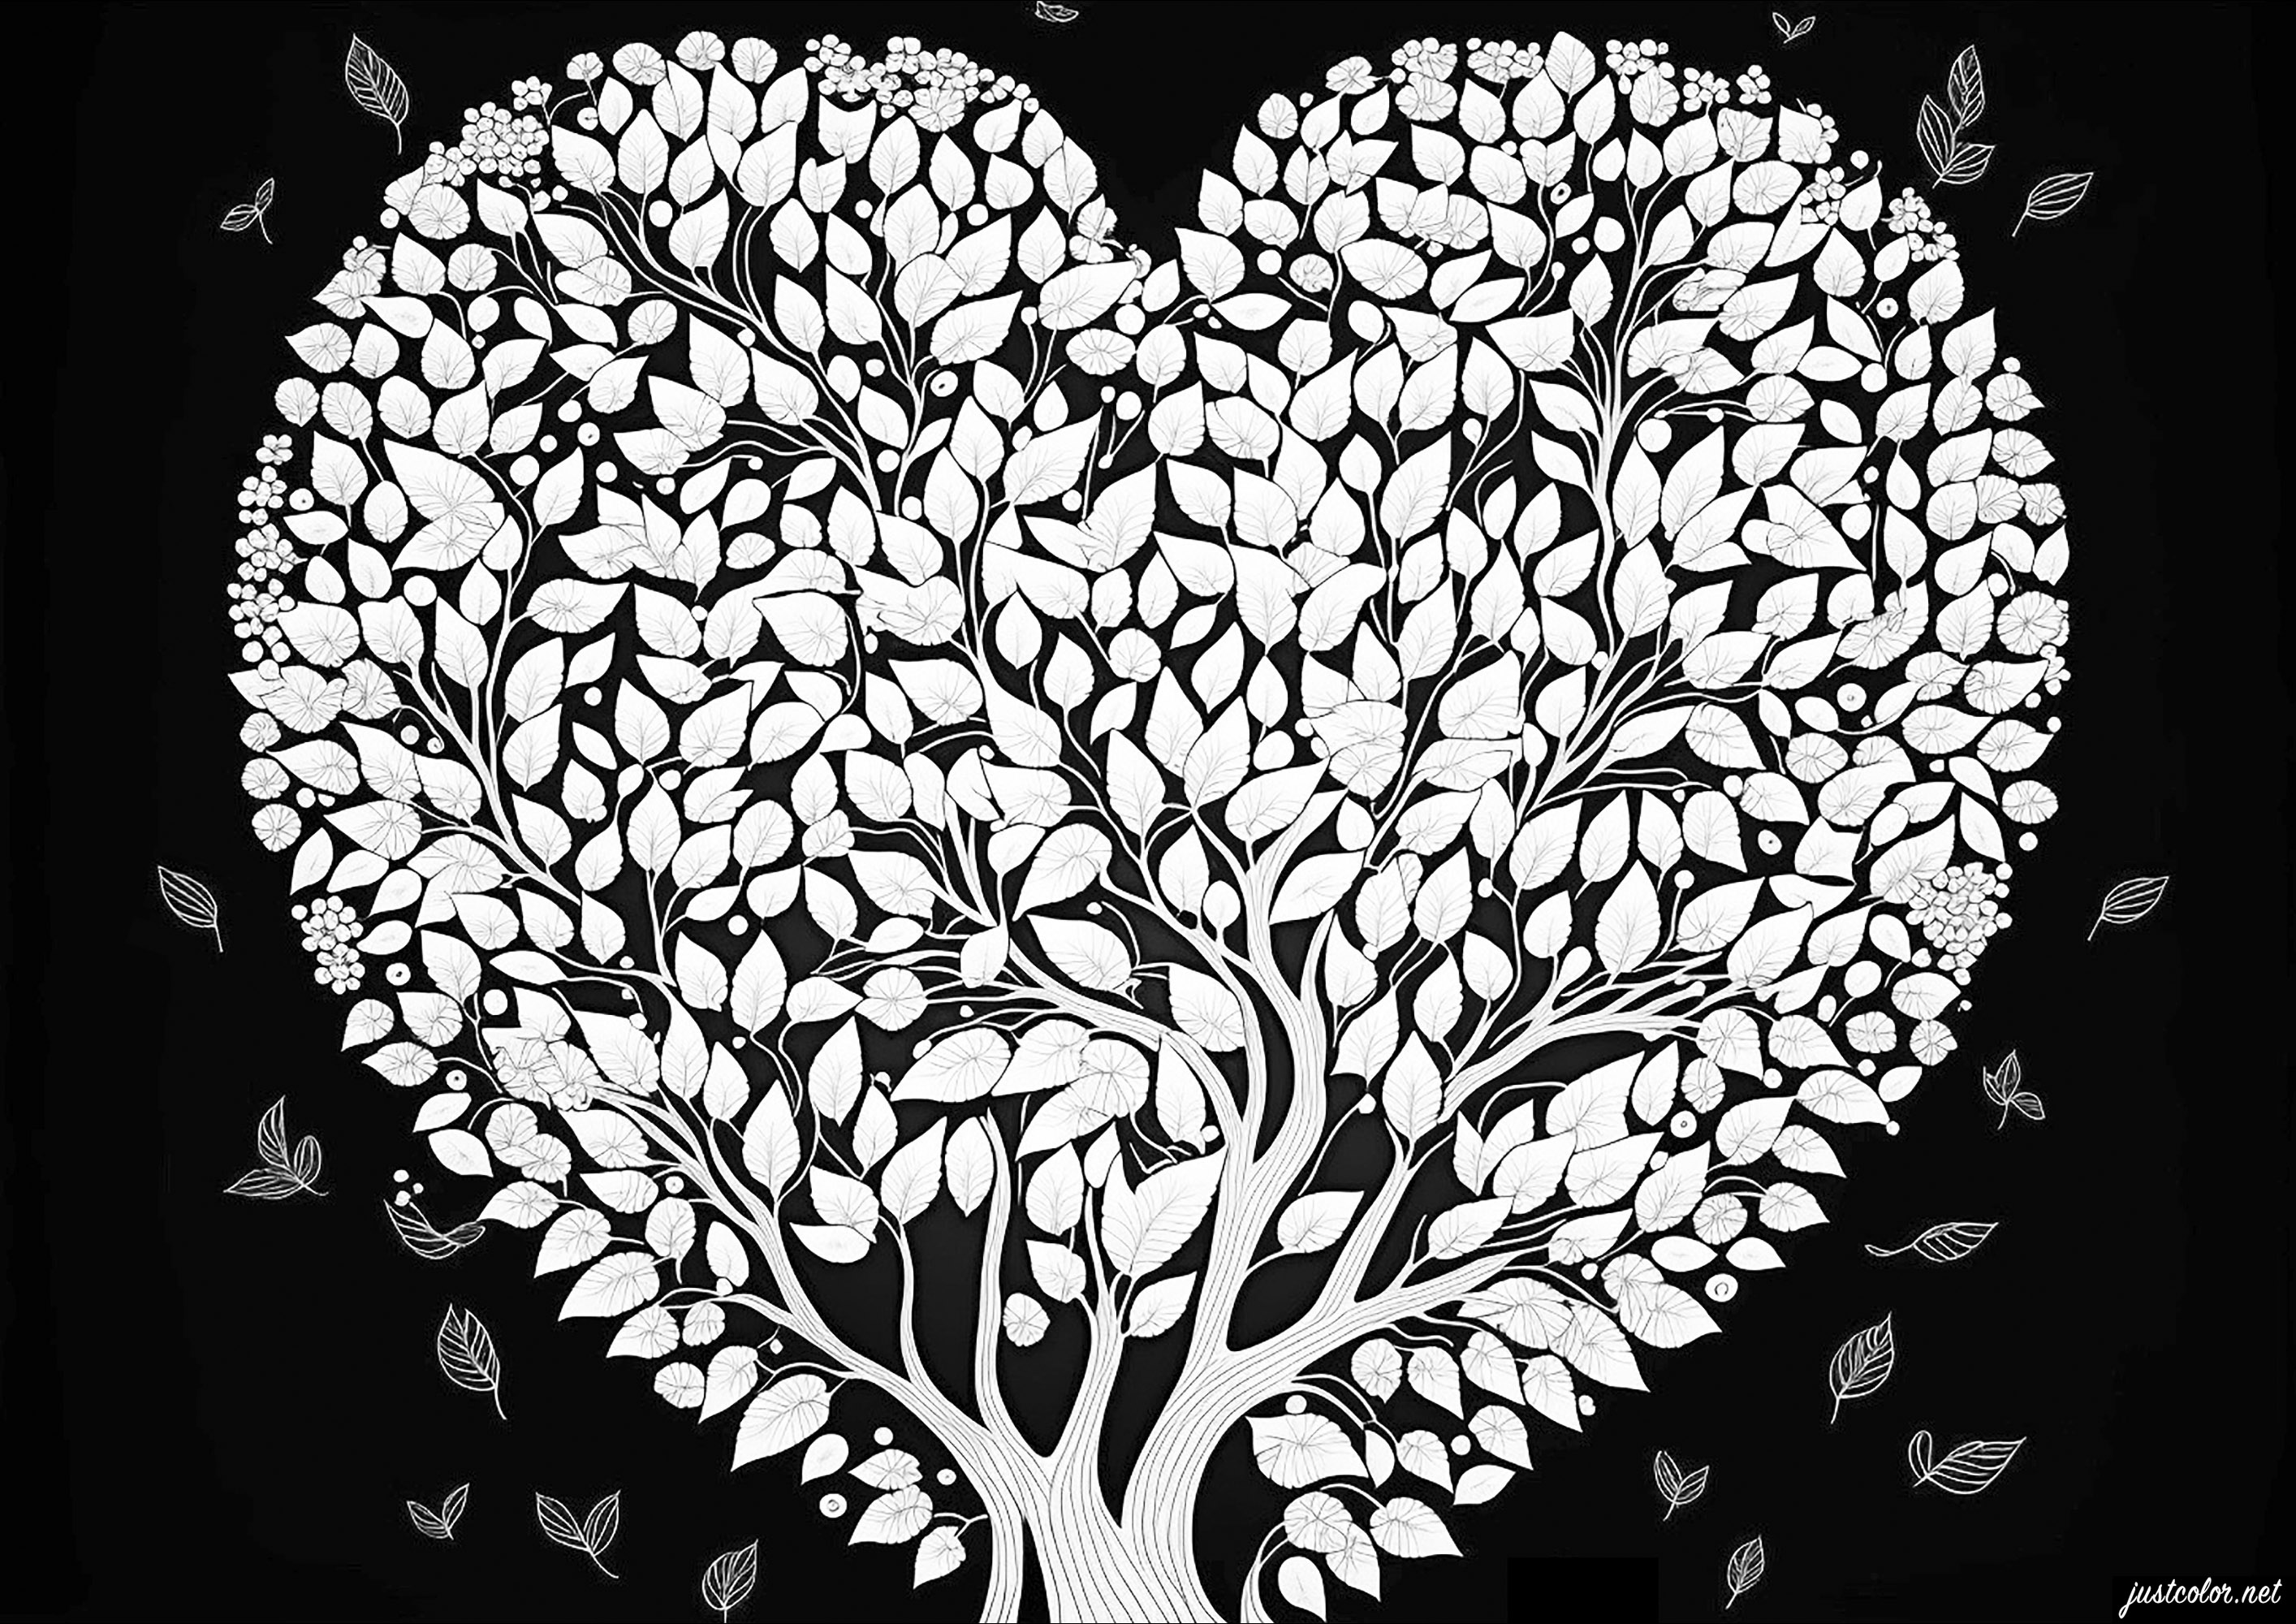 Arbre d'amour sur un fond noir. Coloriez ce magnifique arbre en forme de coeur, et ses nombreuses fleurs élégantes